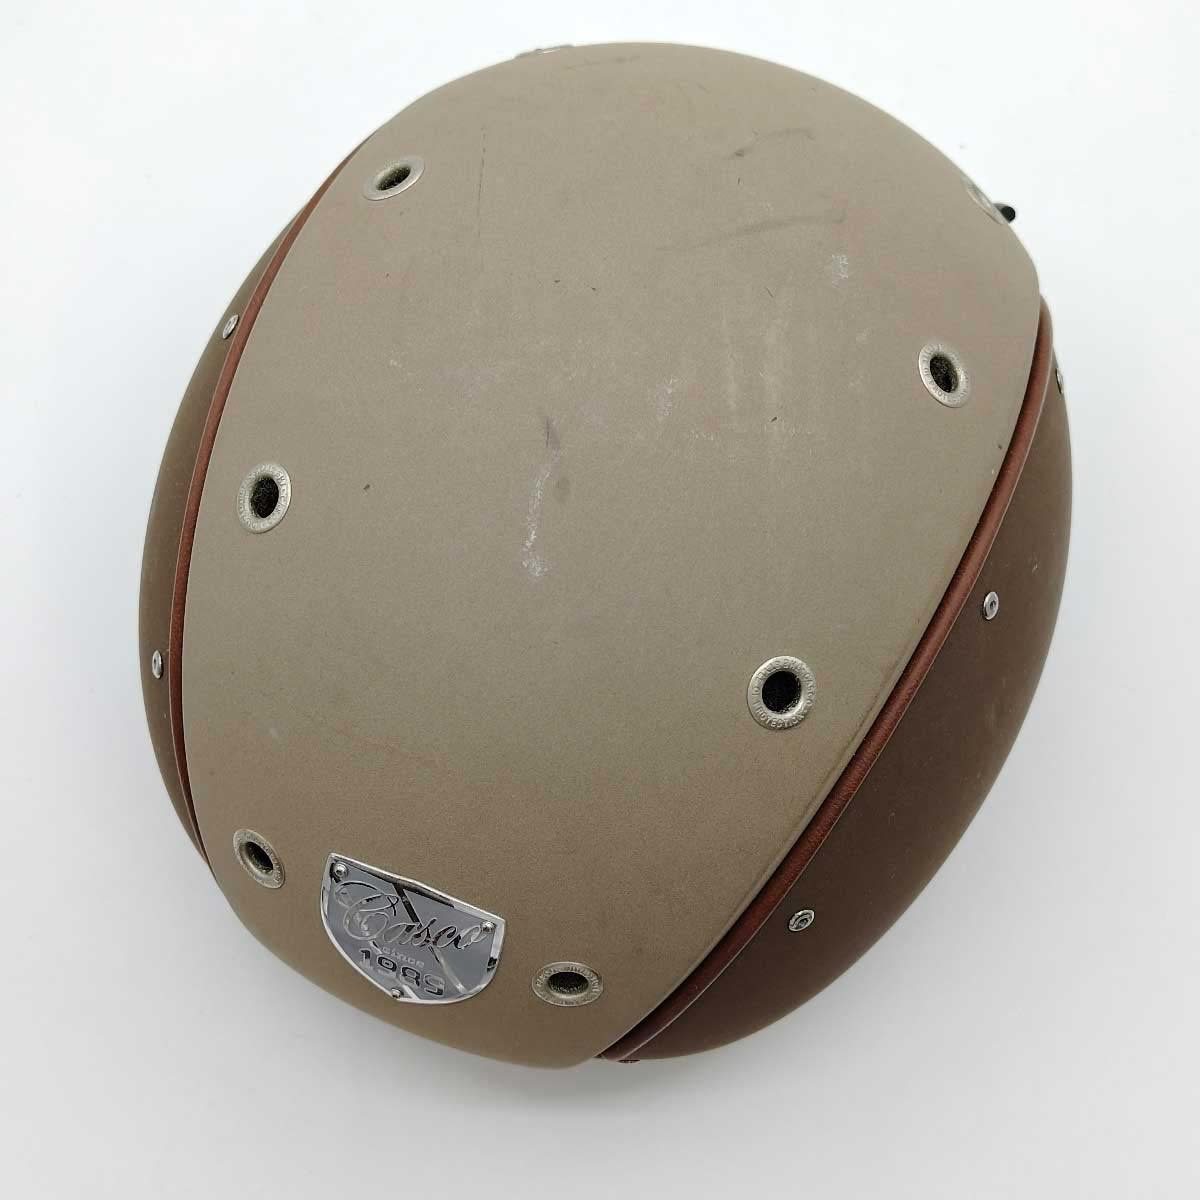 [ used ] rental ko Champ 6 CHAMP-6 horse riding horsemanship helmet L (59-62cm) CASCO light brown case attaching 